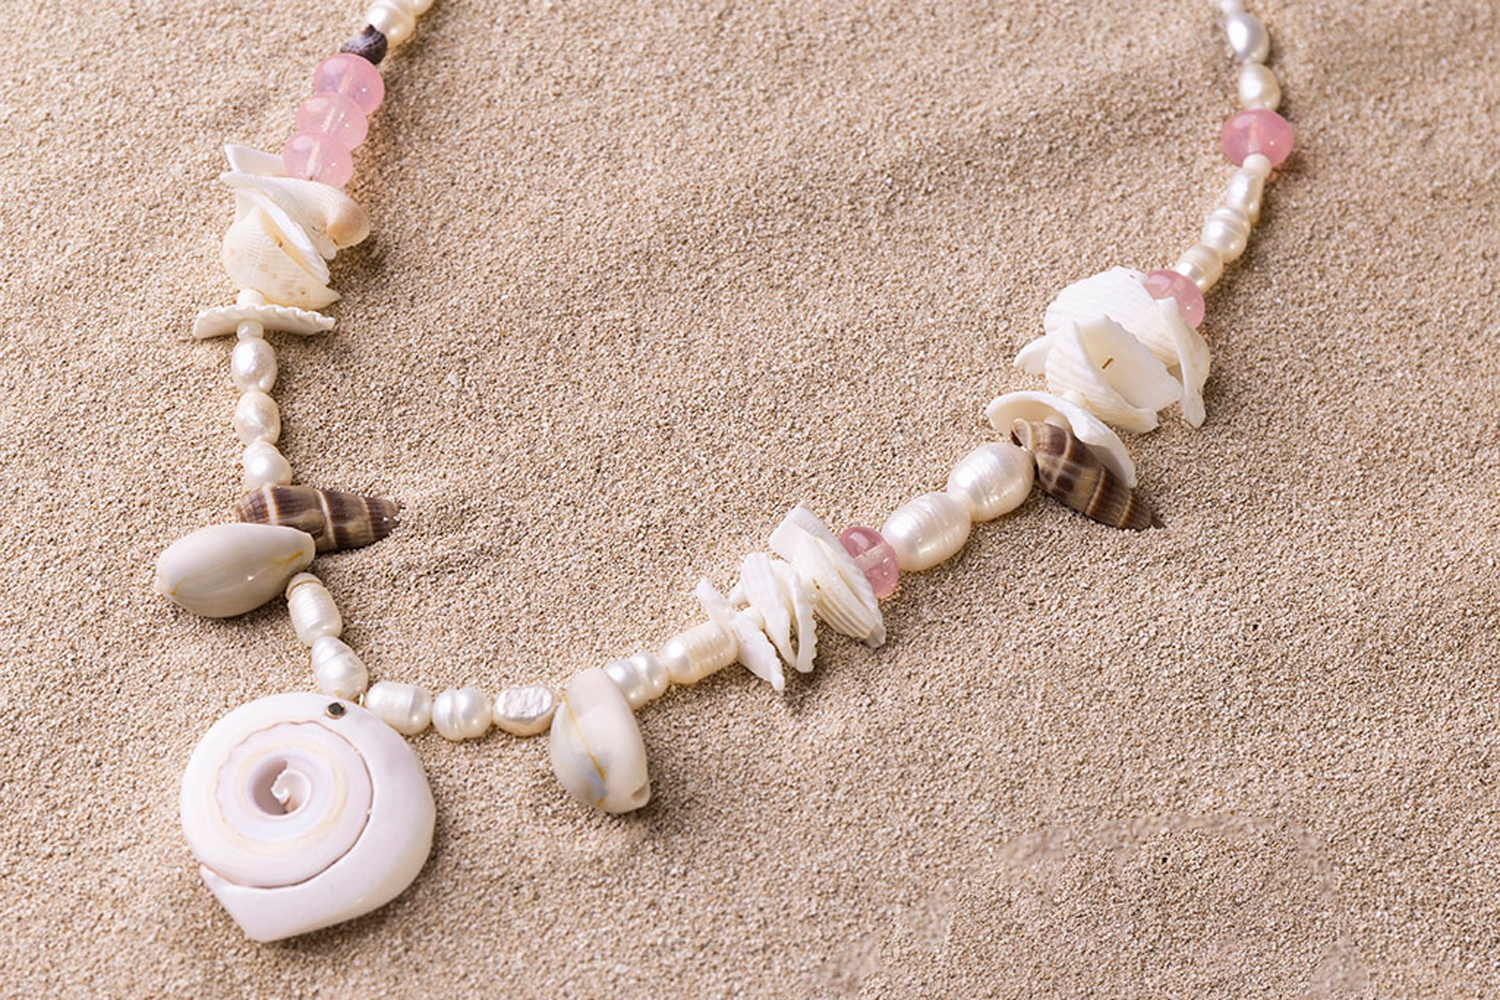 Tuto Bracelet élastique avec perles colorées - Perles & Co